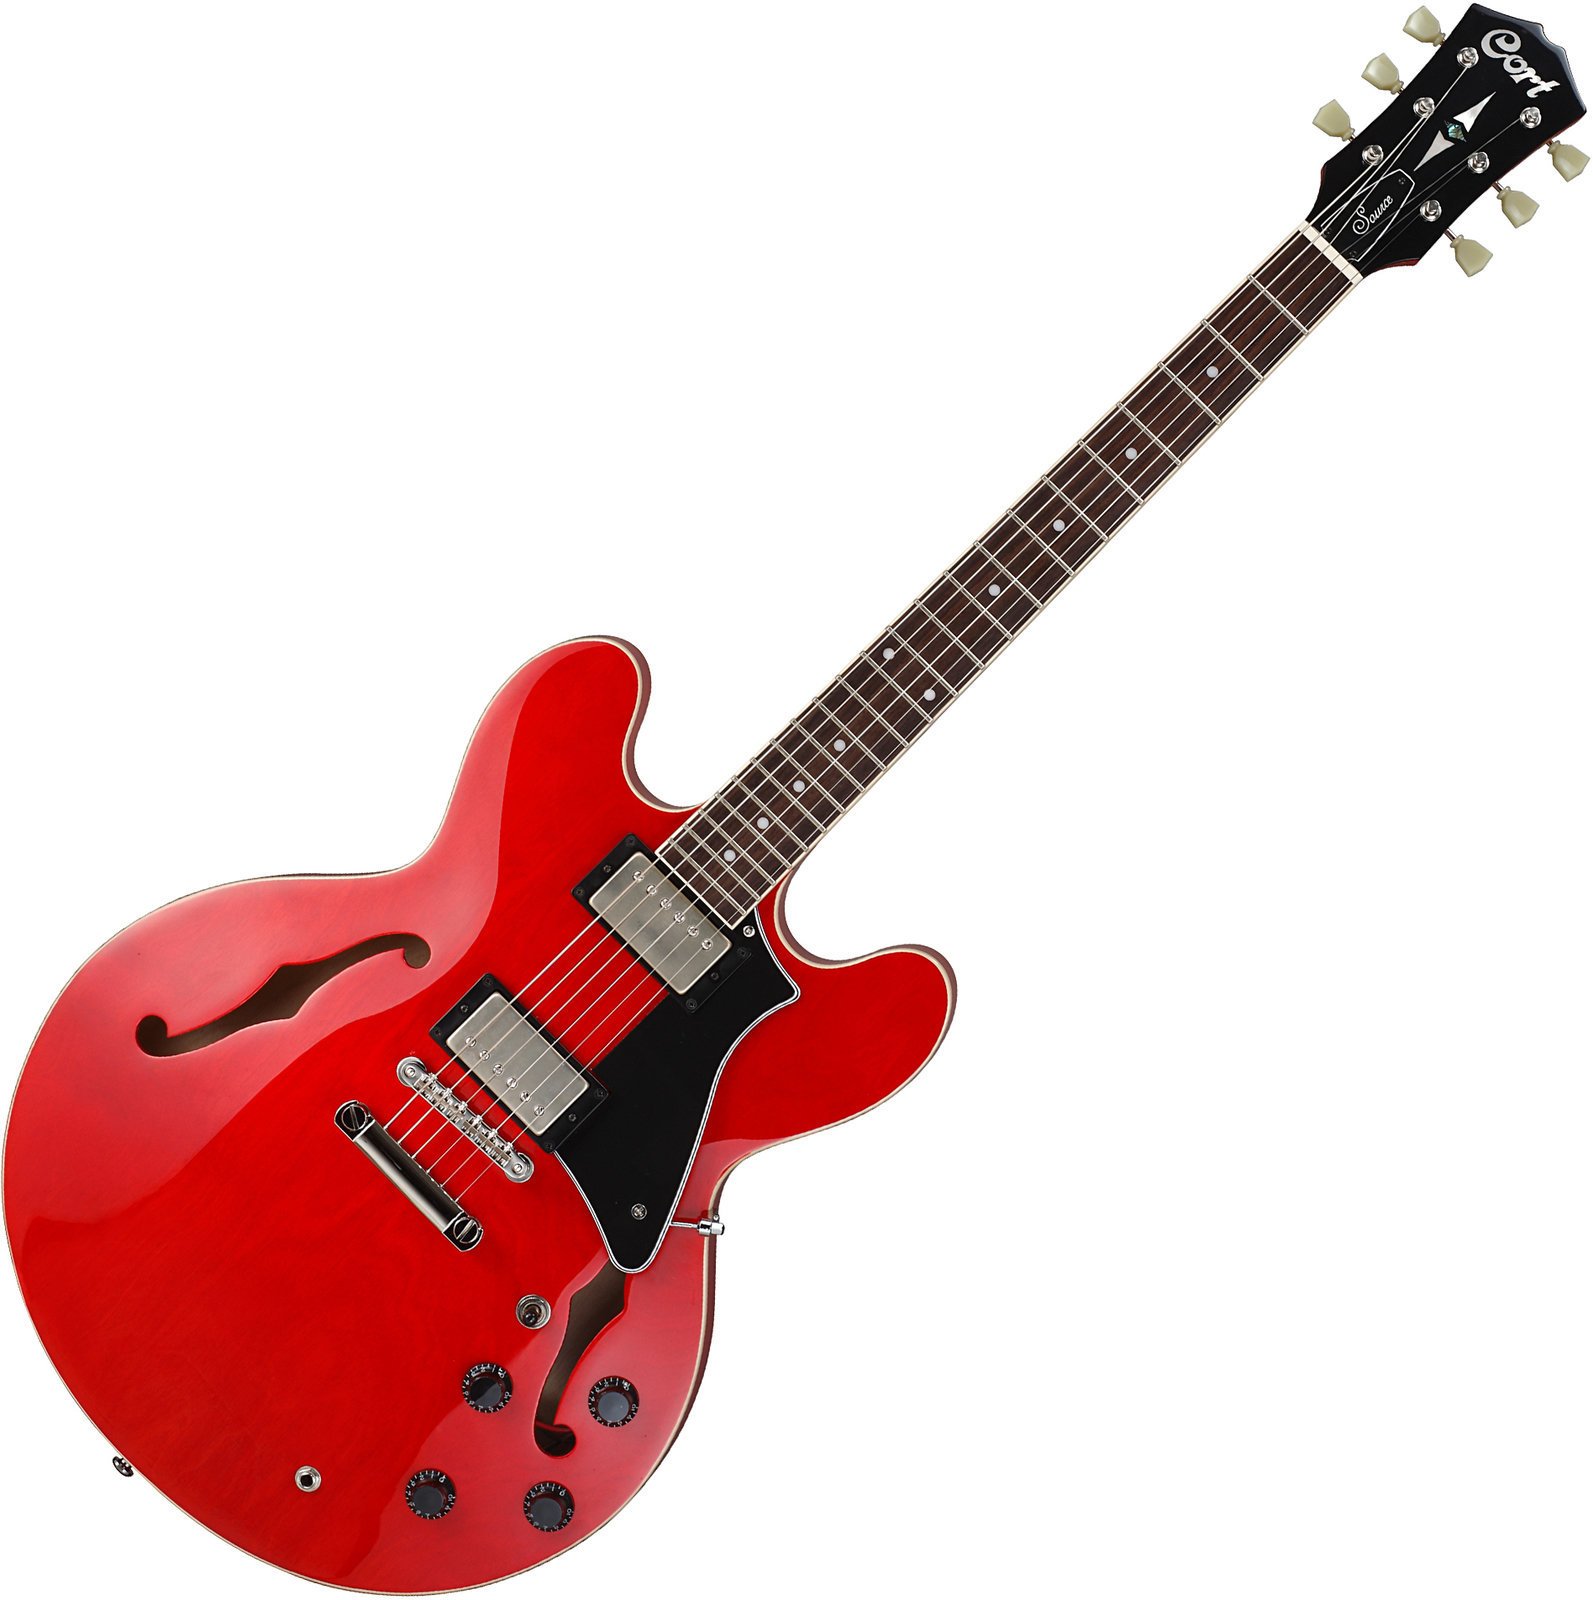 Halvakustisk guitar Cort Source Cherry Red